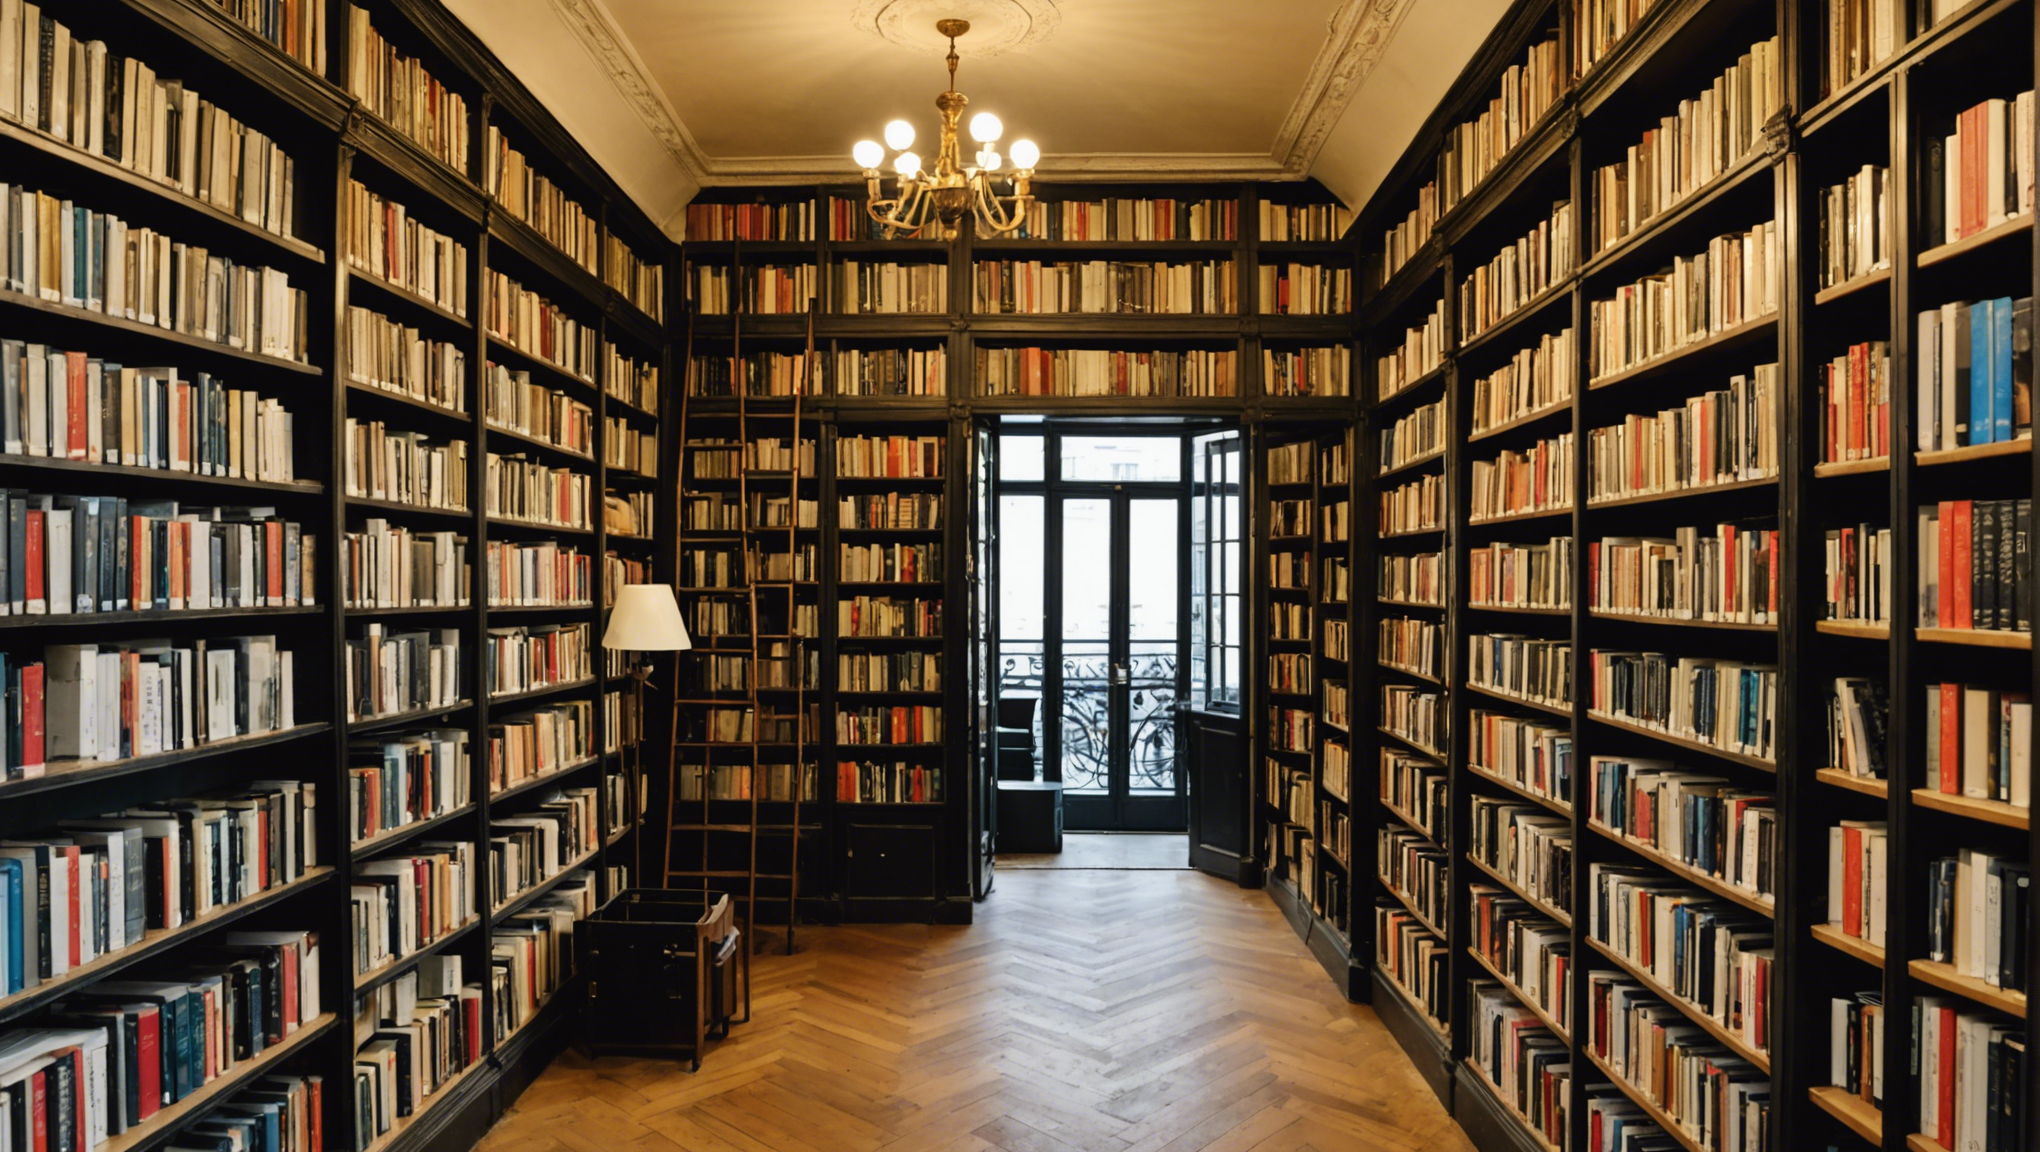 découvrez les librairies emblématiques de paris et plongez dans l'atmosphère littéraire unique de la capitale. trouvez les adresses incontournables pour les amateurs de livres et de lectures.